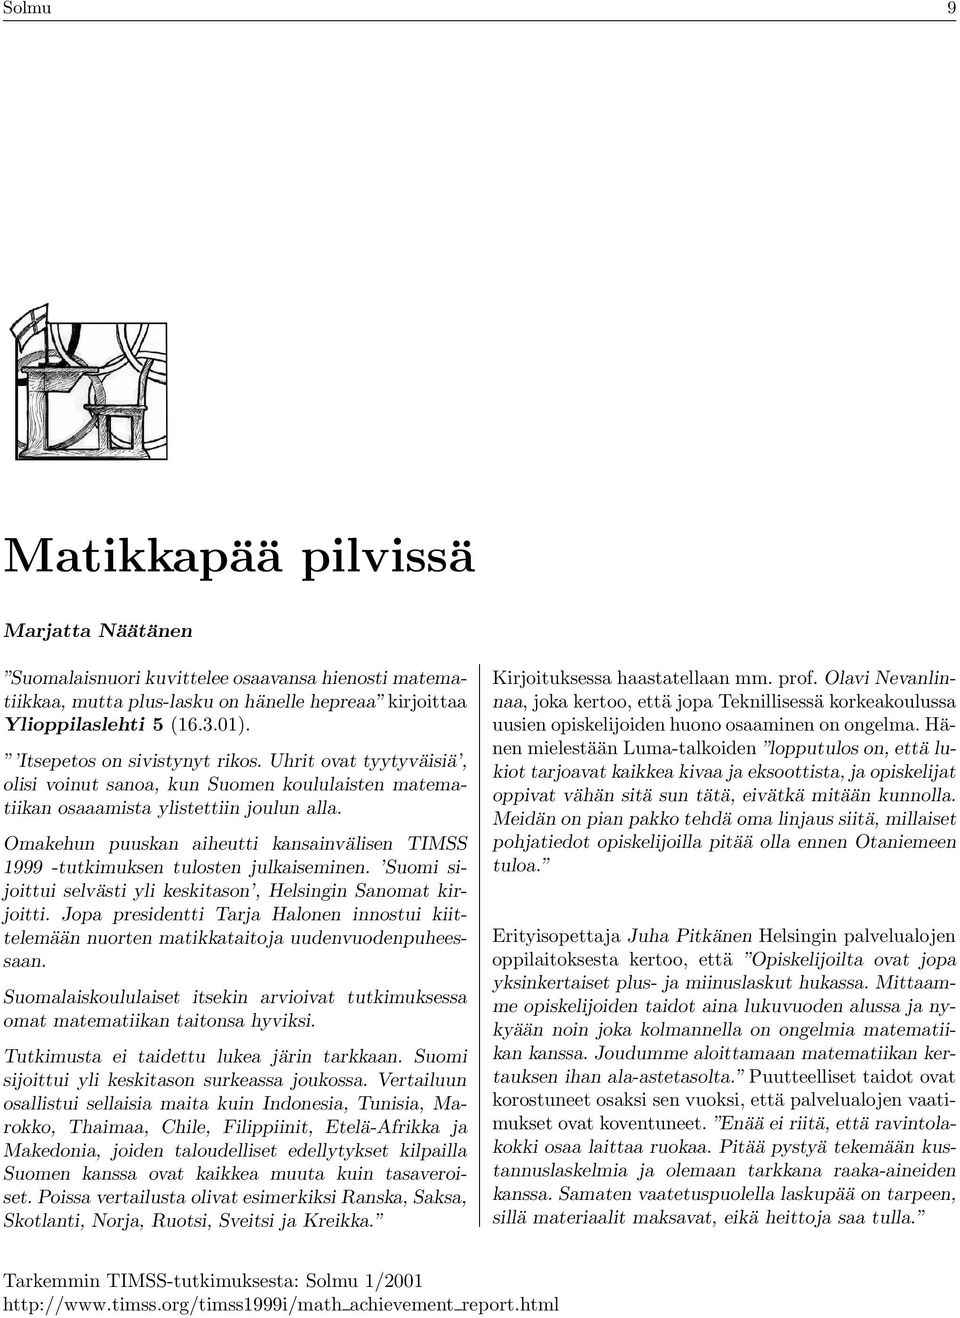 Suomi sijoittui slvästi yli kskitason, Hlsingin Sanomat kirjoitti. Jopa prsidntti Tarja Halonn innostui kiittlmään nuortn matikkataitoja uudnvuodnpuhssaan.